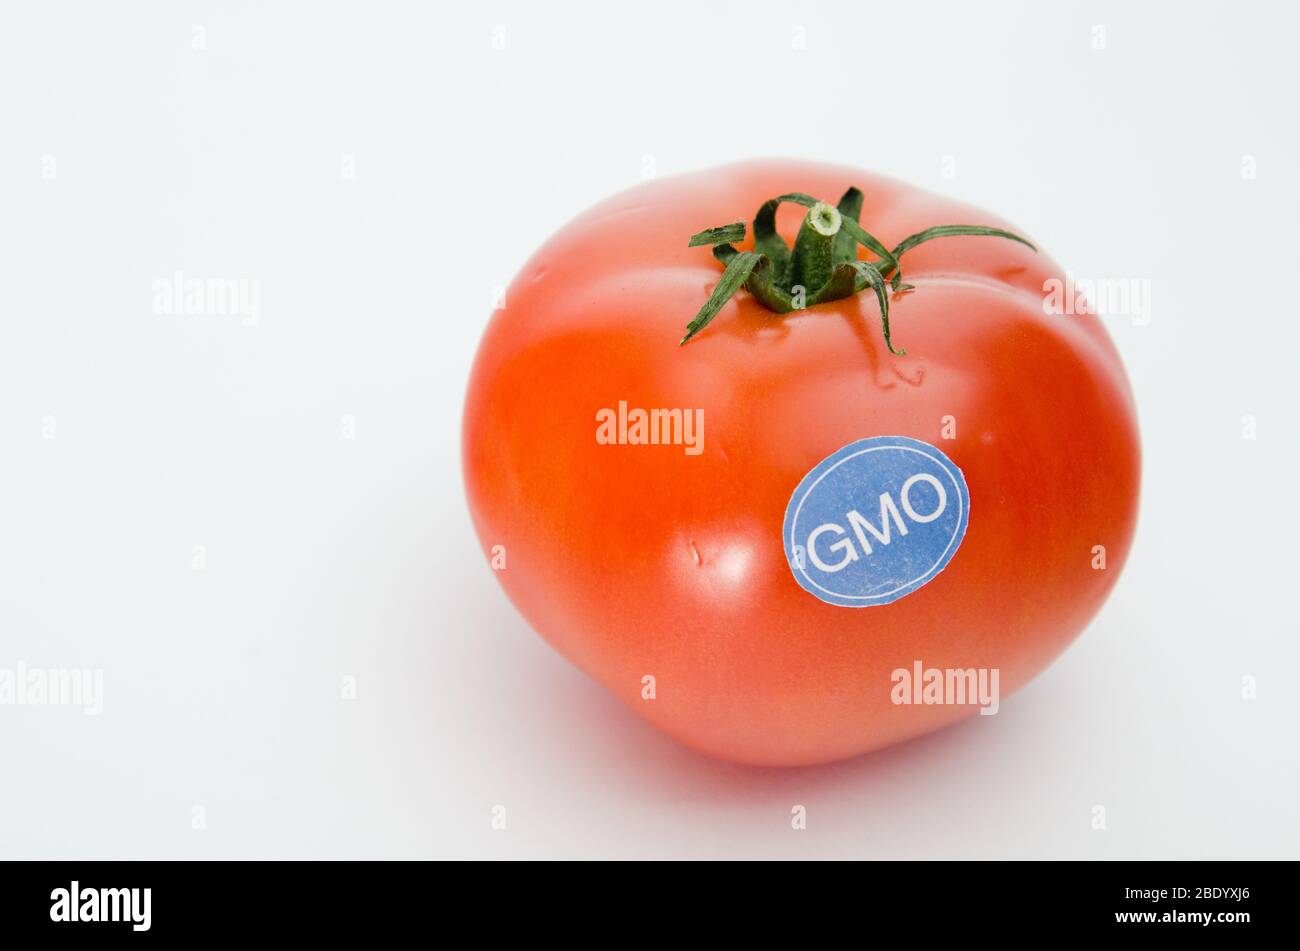 Produits génétiquement modifiés, tomate Banque D'Images